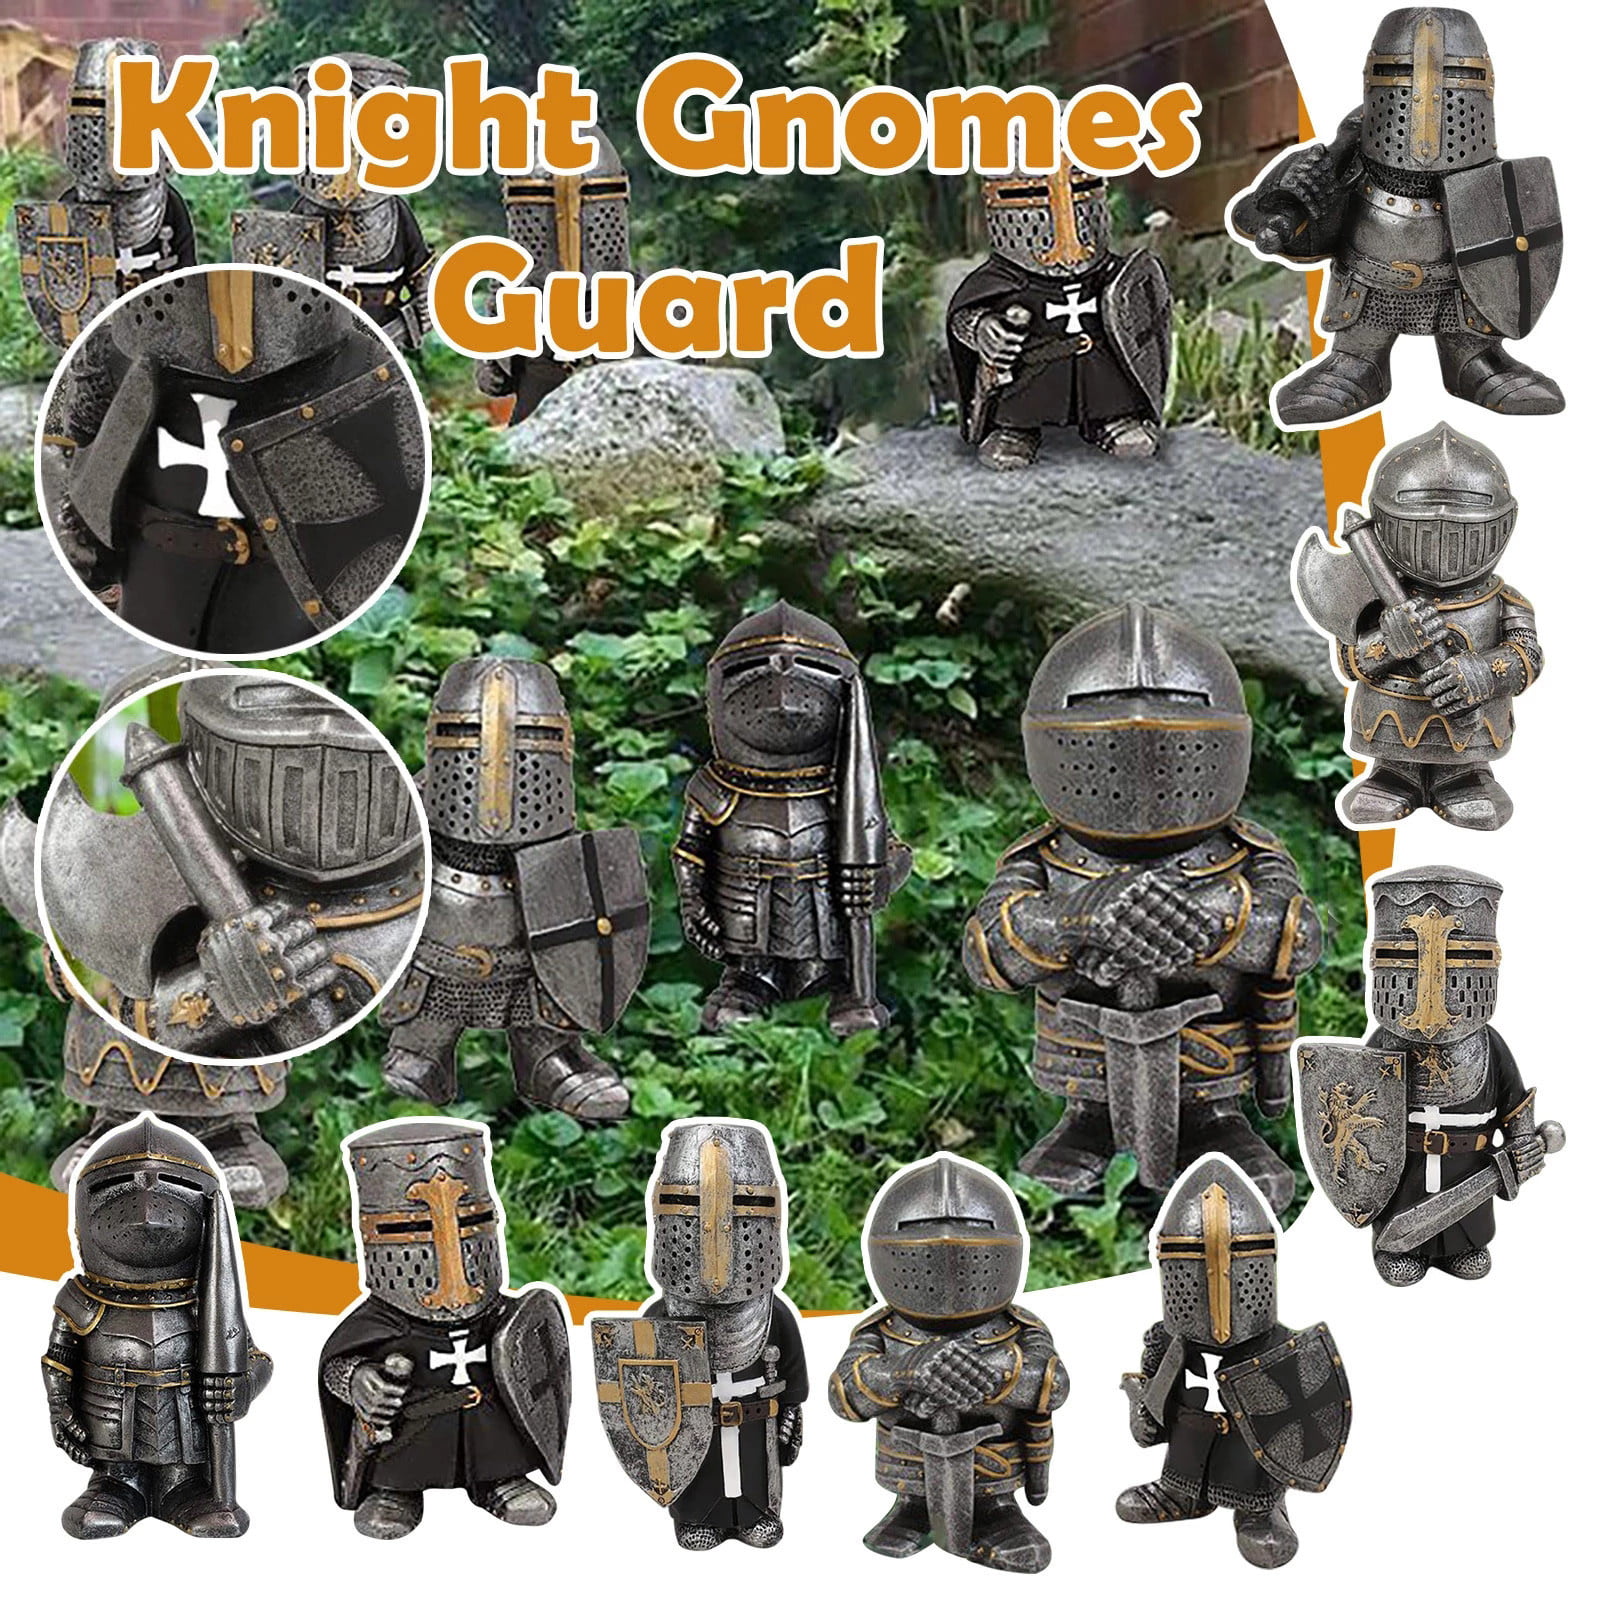 Guard Knight Gnomes Resin Sculpture Ornament Home Garden Decor 